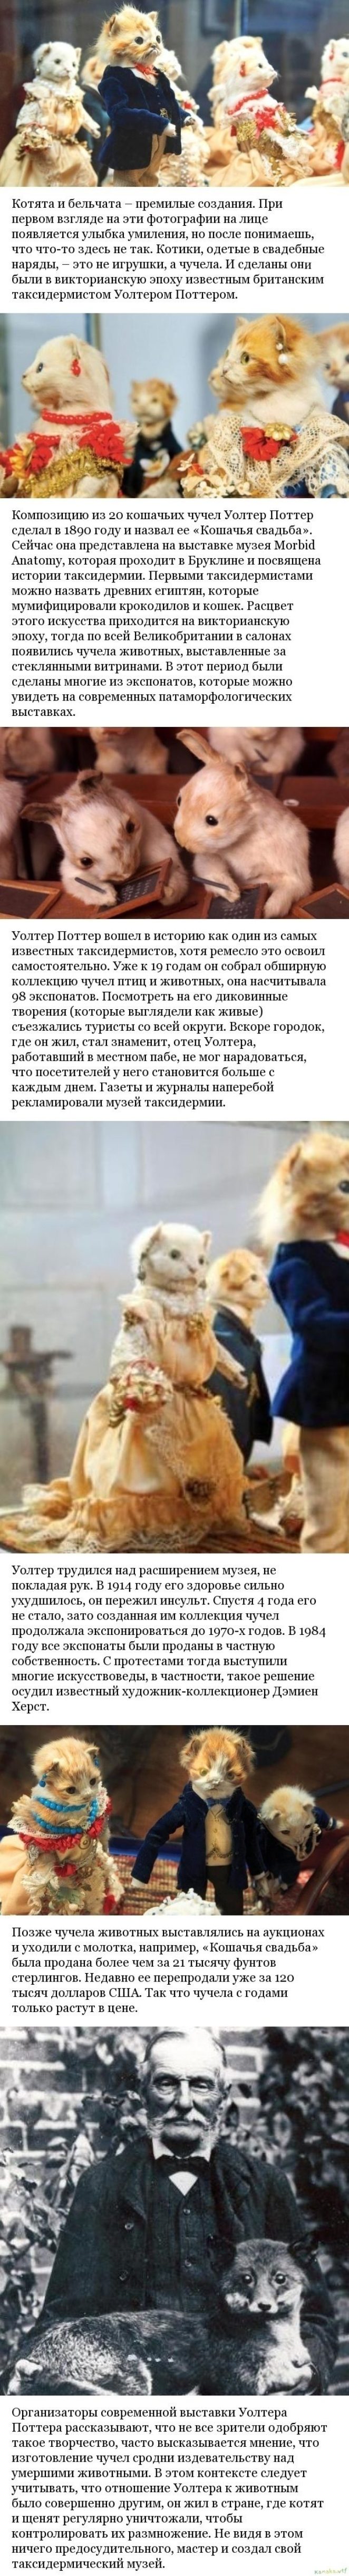 Кошачья свадьба: жутковатые экспонаты музея таксидермии викторианской эпохи​